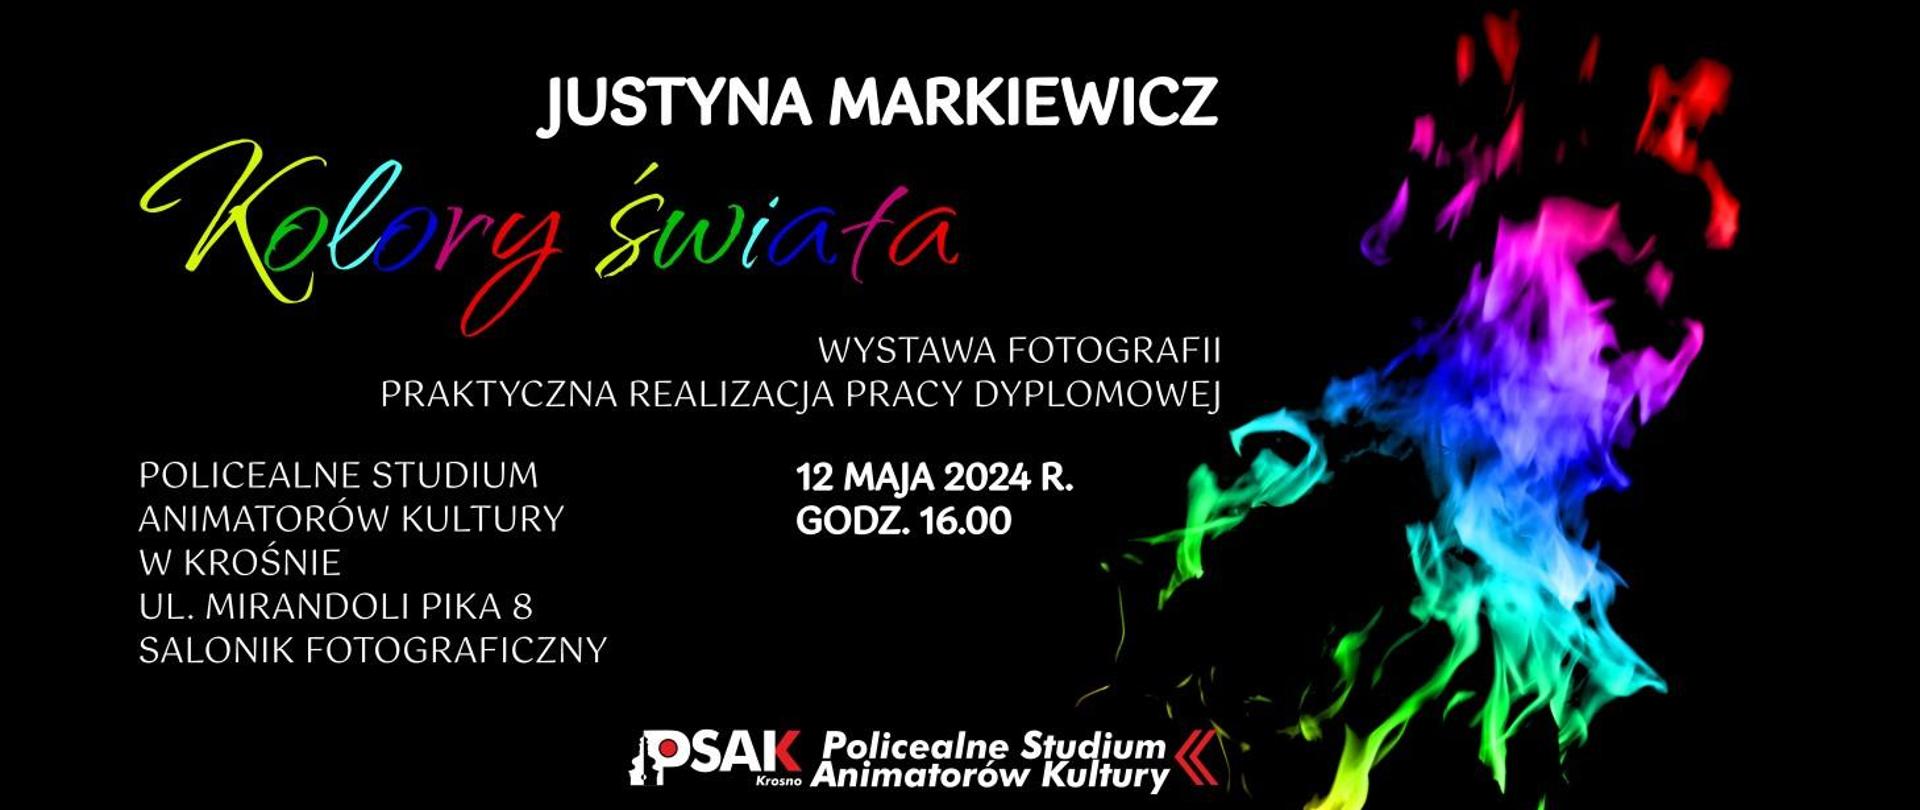 Plakat informujący o wystawie fotograficznej Justyny Markiewicz w dniu 12 maja 2024 r. w Policealnym Studium Animatorów Kultury w Krośnie. Plakat ma czarne tło. Po prawej stronie są kolorowe smugi. 